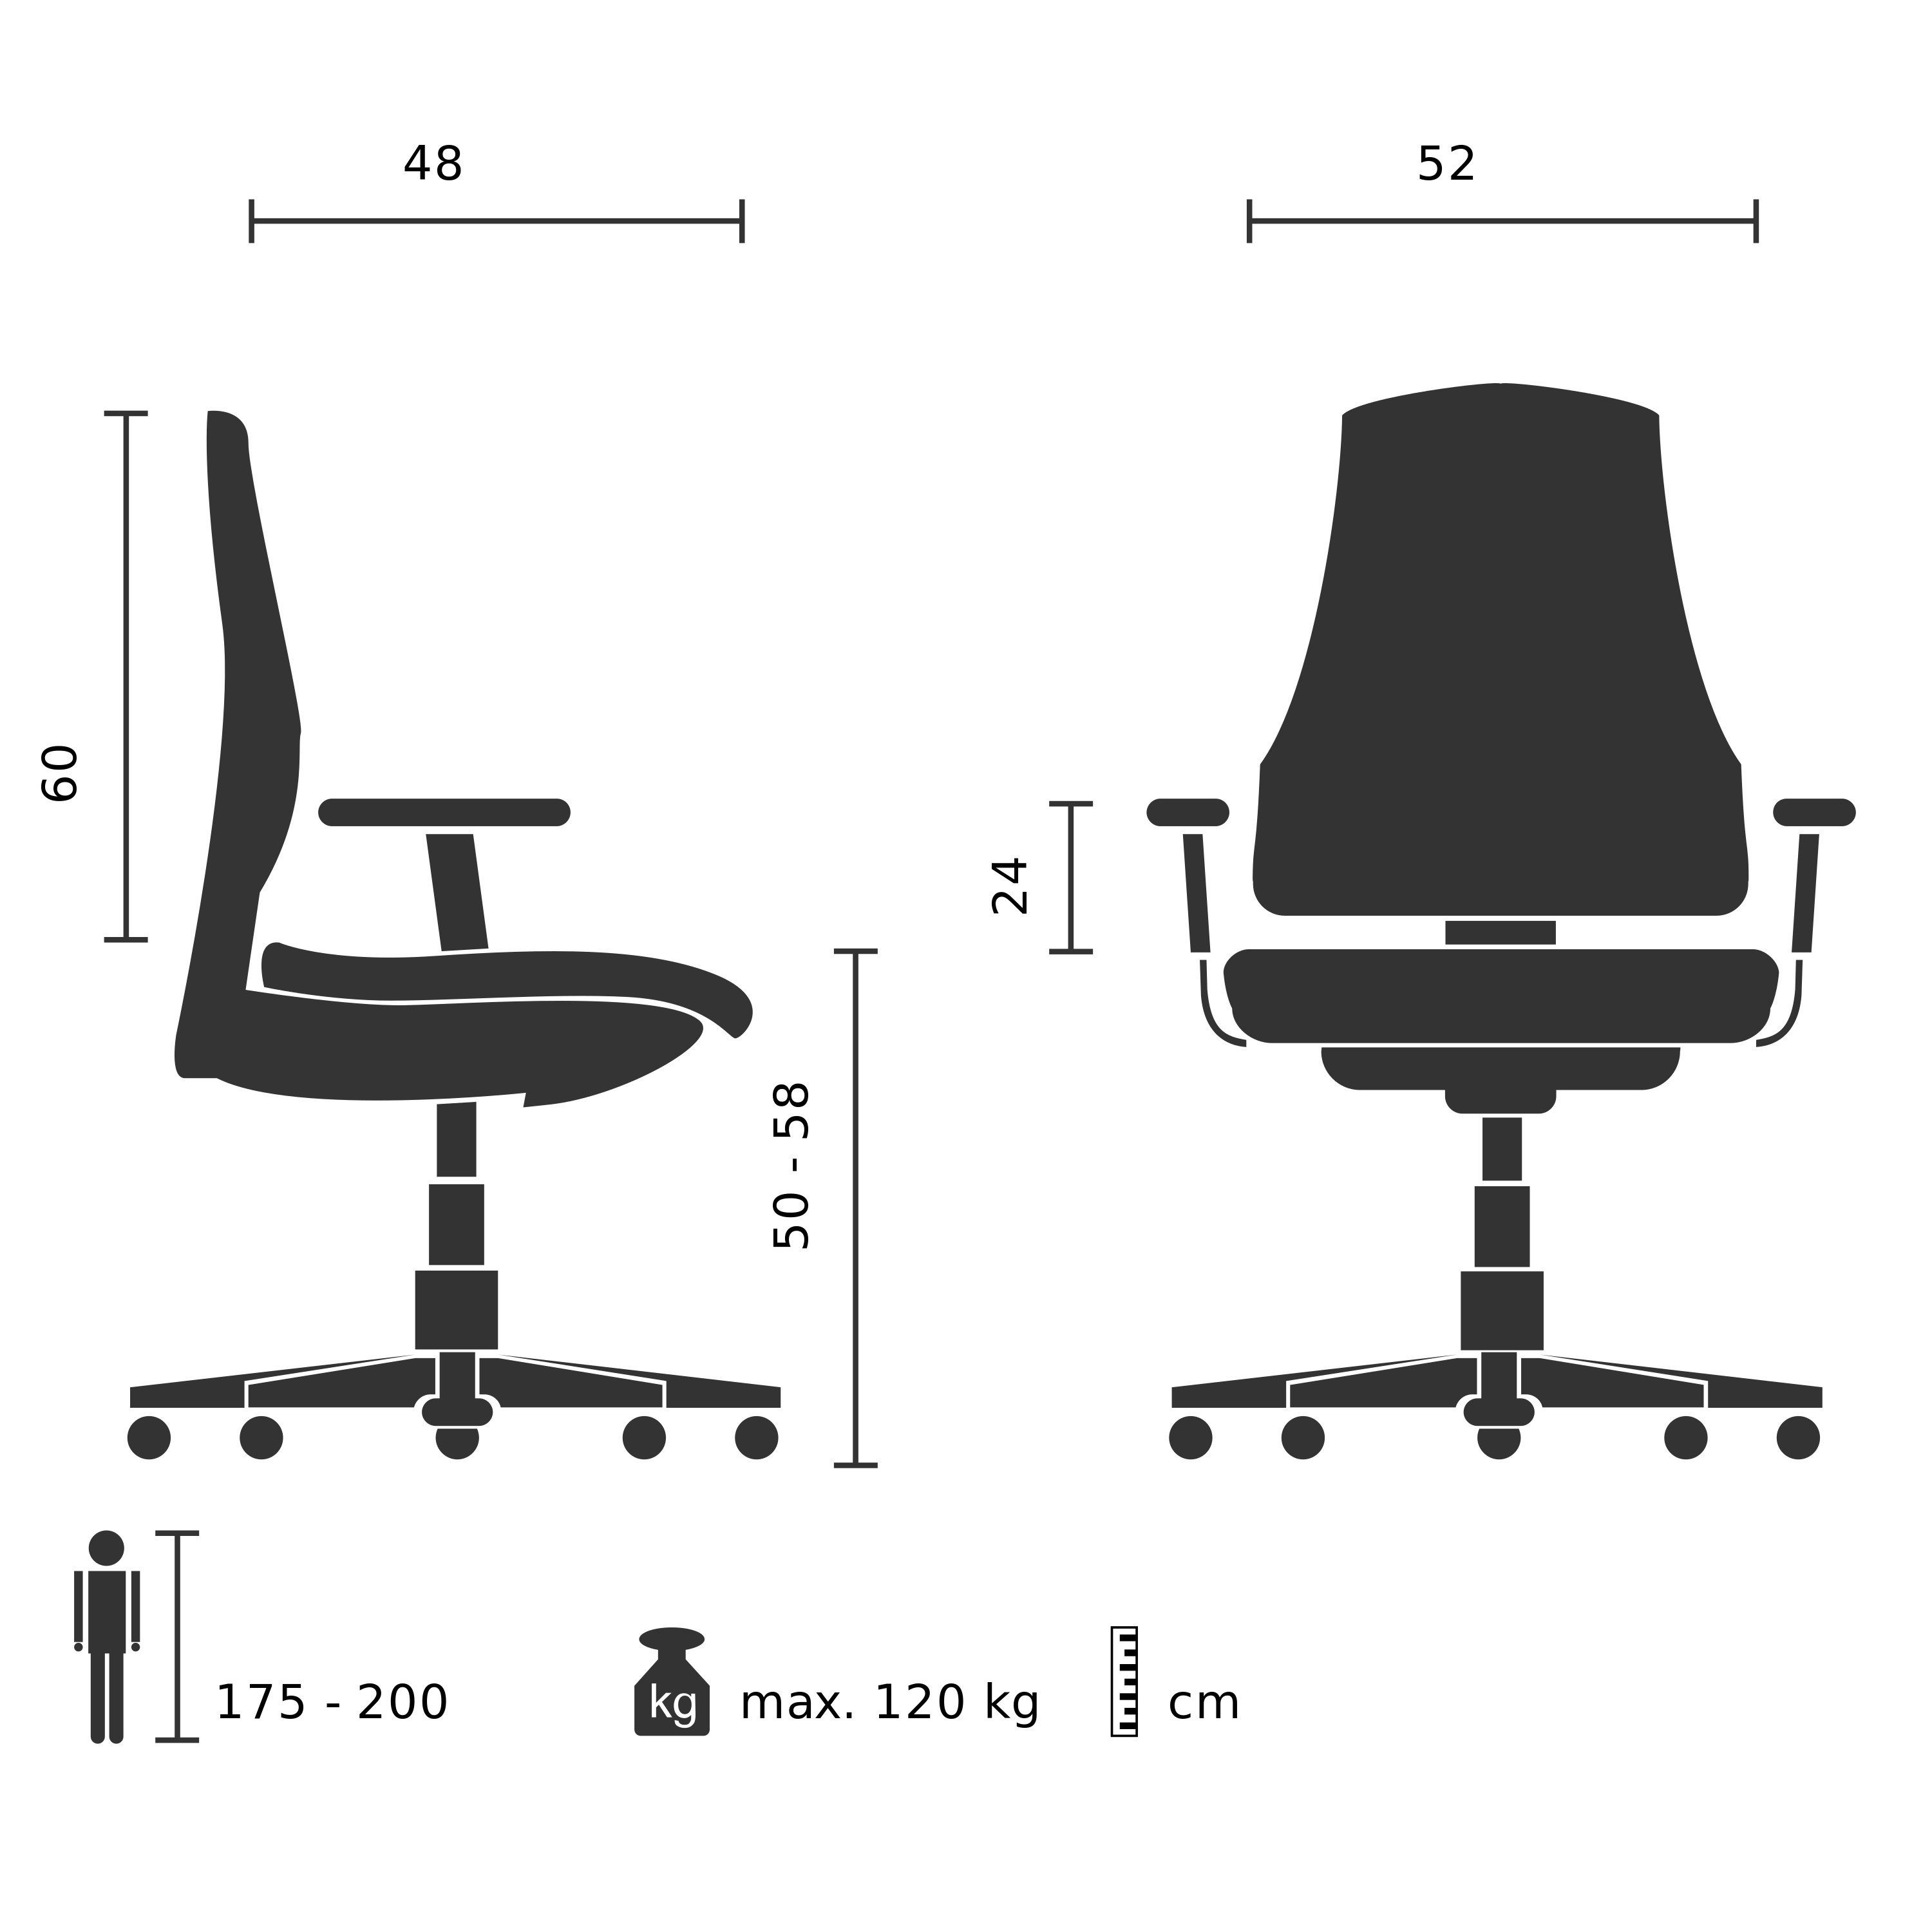 Bürostuhl Home Office Schreibtischstuhl St), RELAX Stoff/Netzstoff 100 Drehstuhl ergonomisch MyBuero HX (1